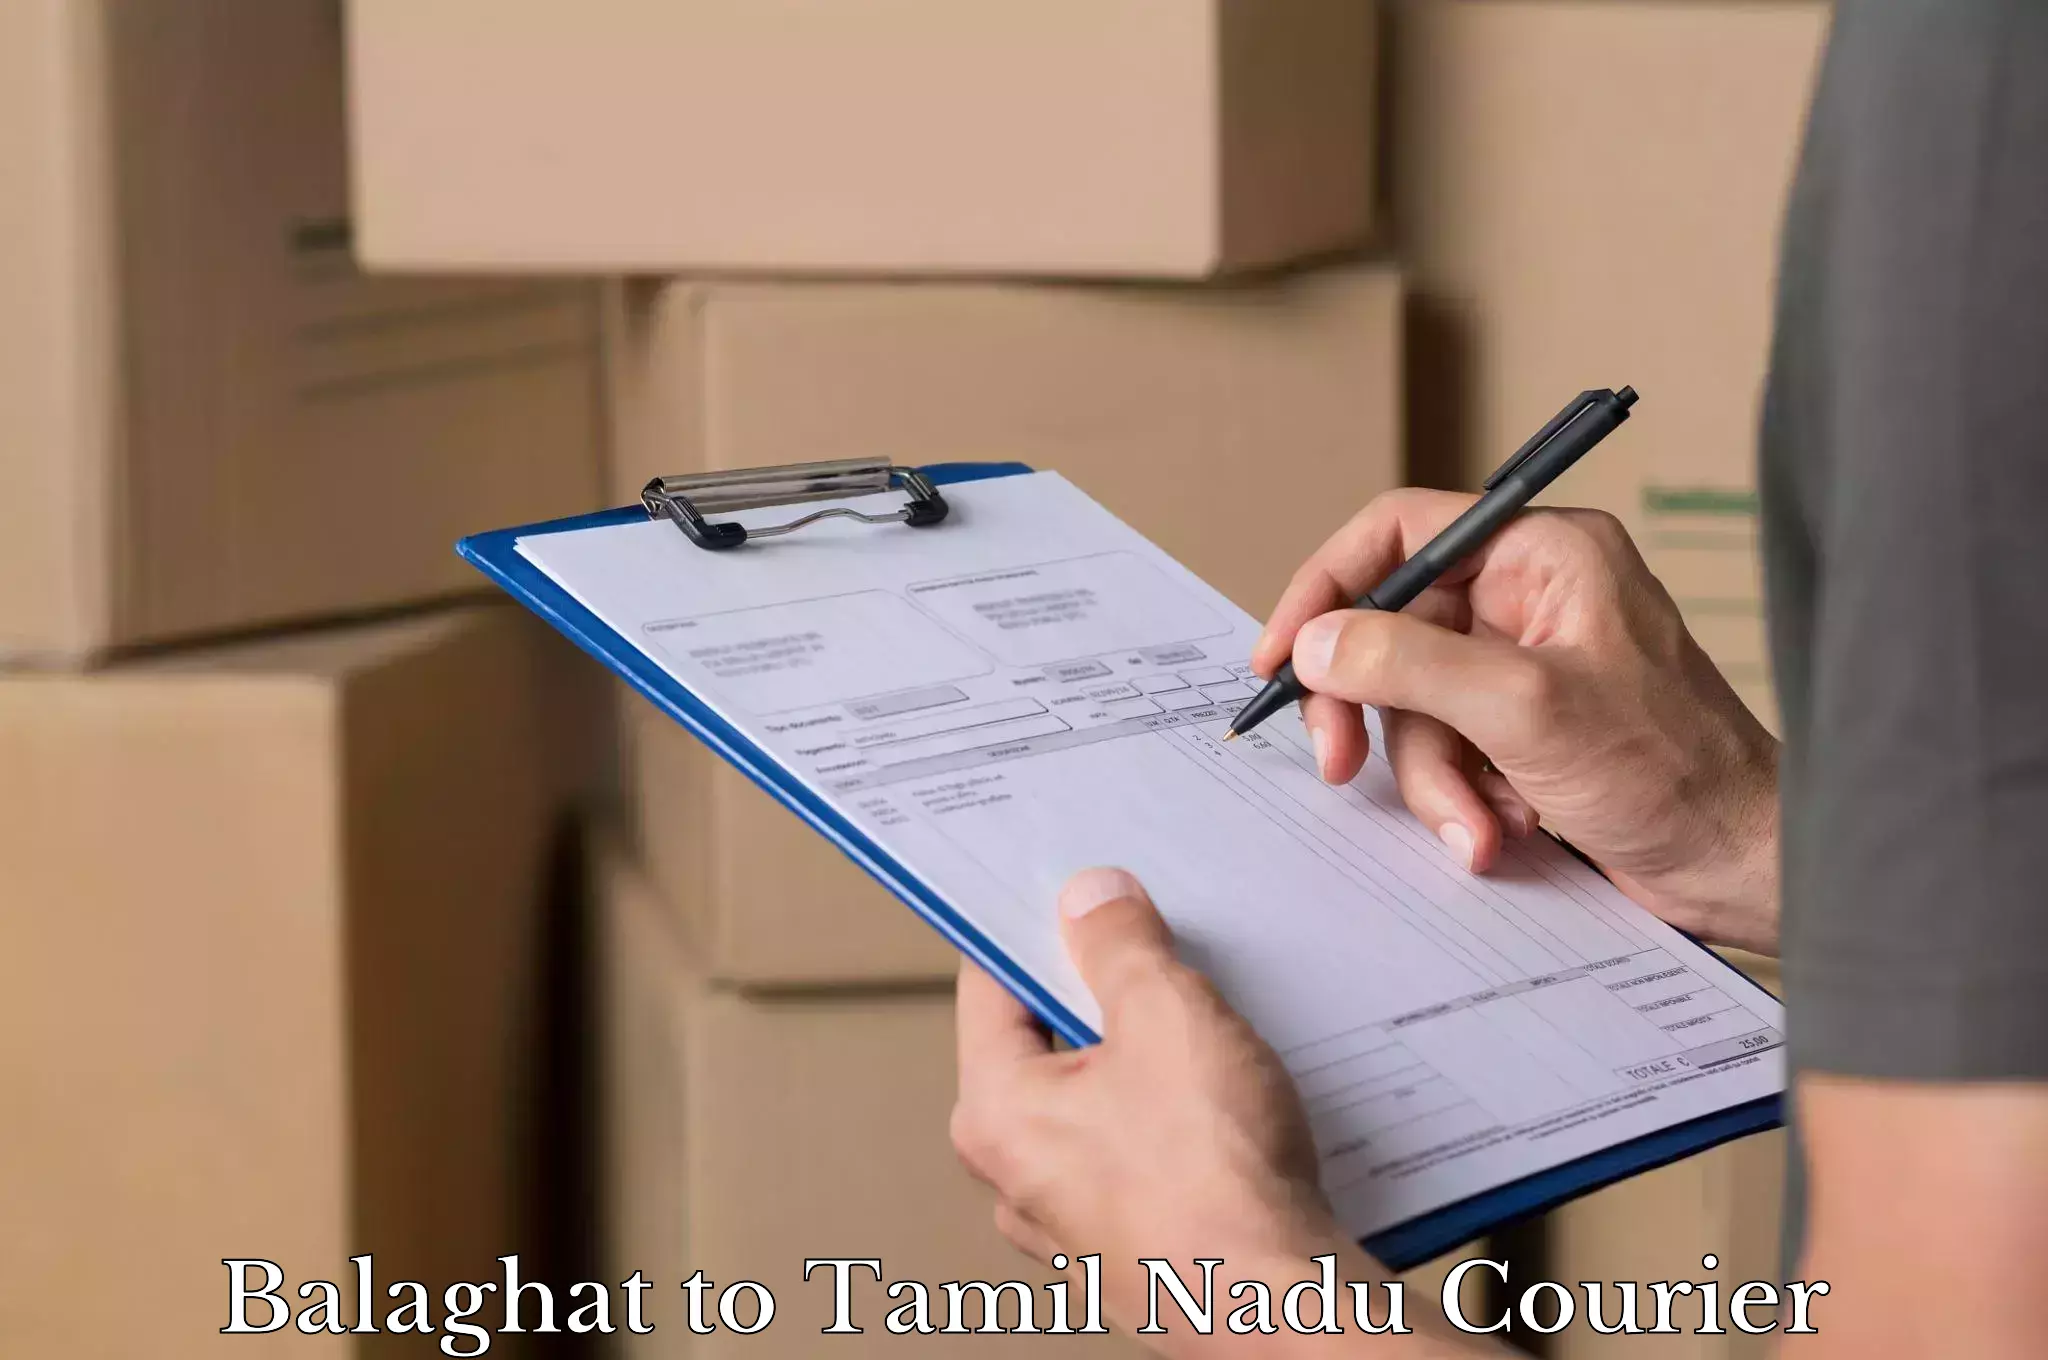 Luggage transit service Balaghat to Tamil Nadu